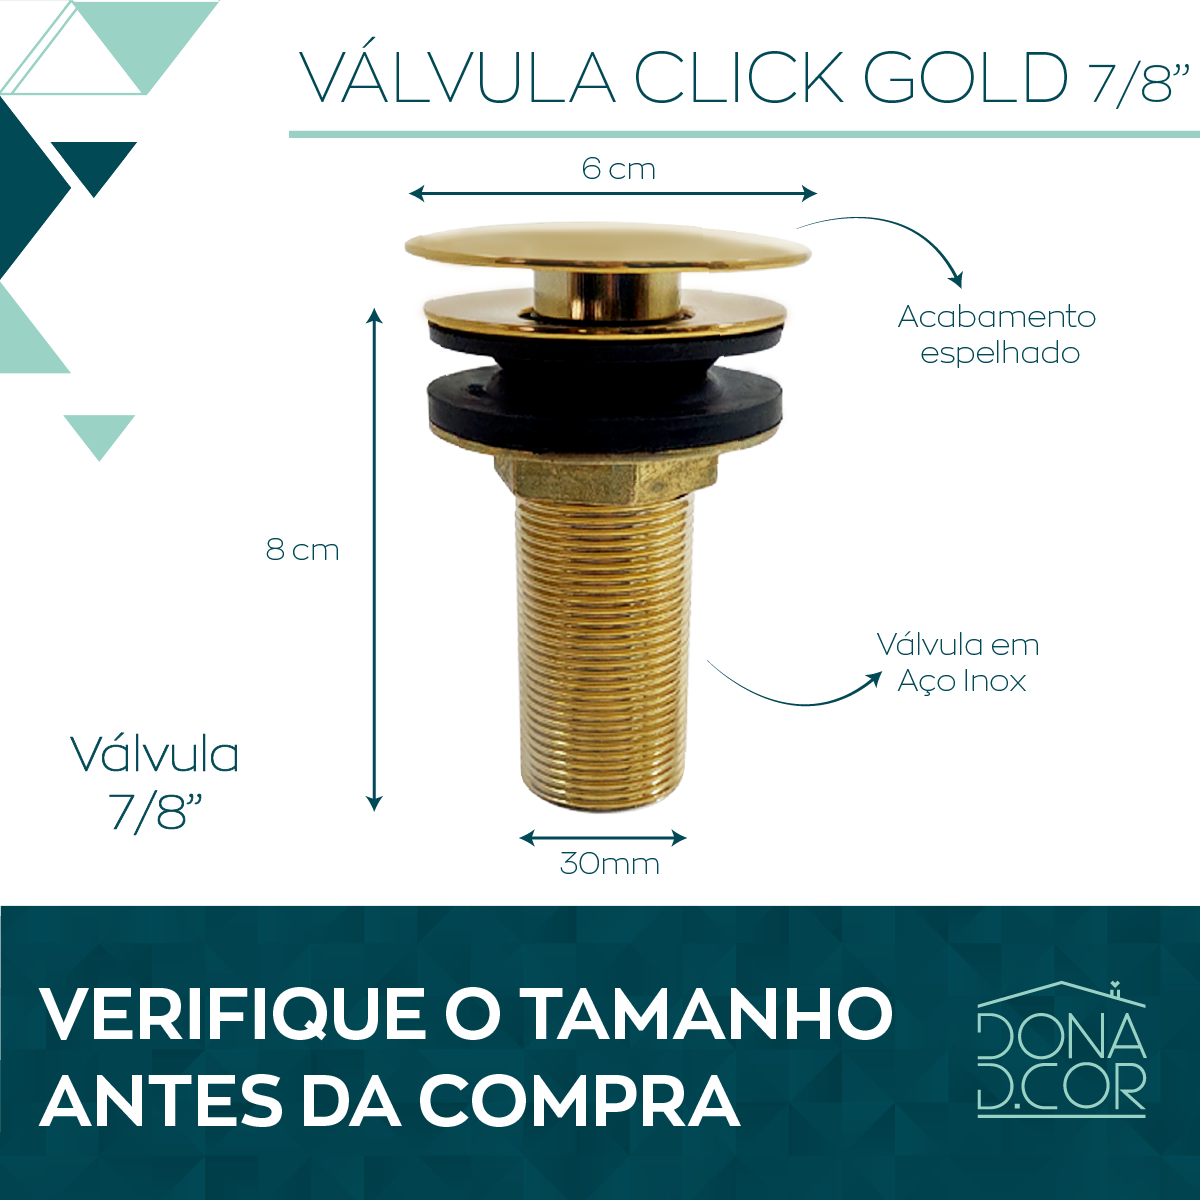 Valvula Ralo Click Dourado Gold 7/8 inox Pia Lavatório Cuba - 2